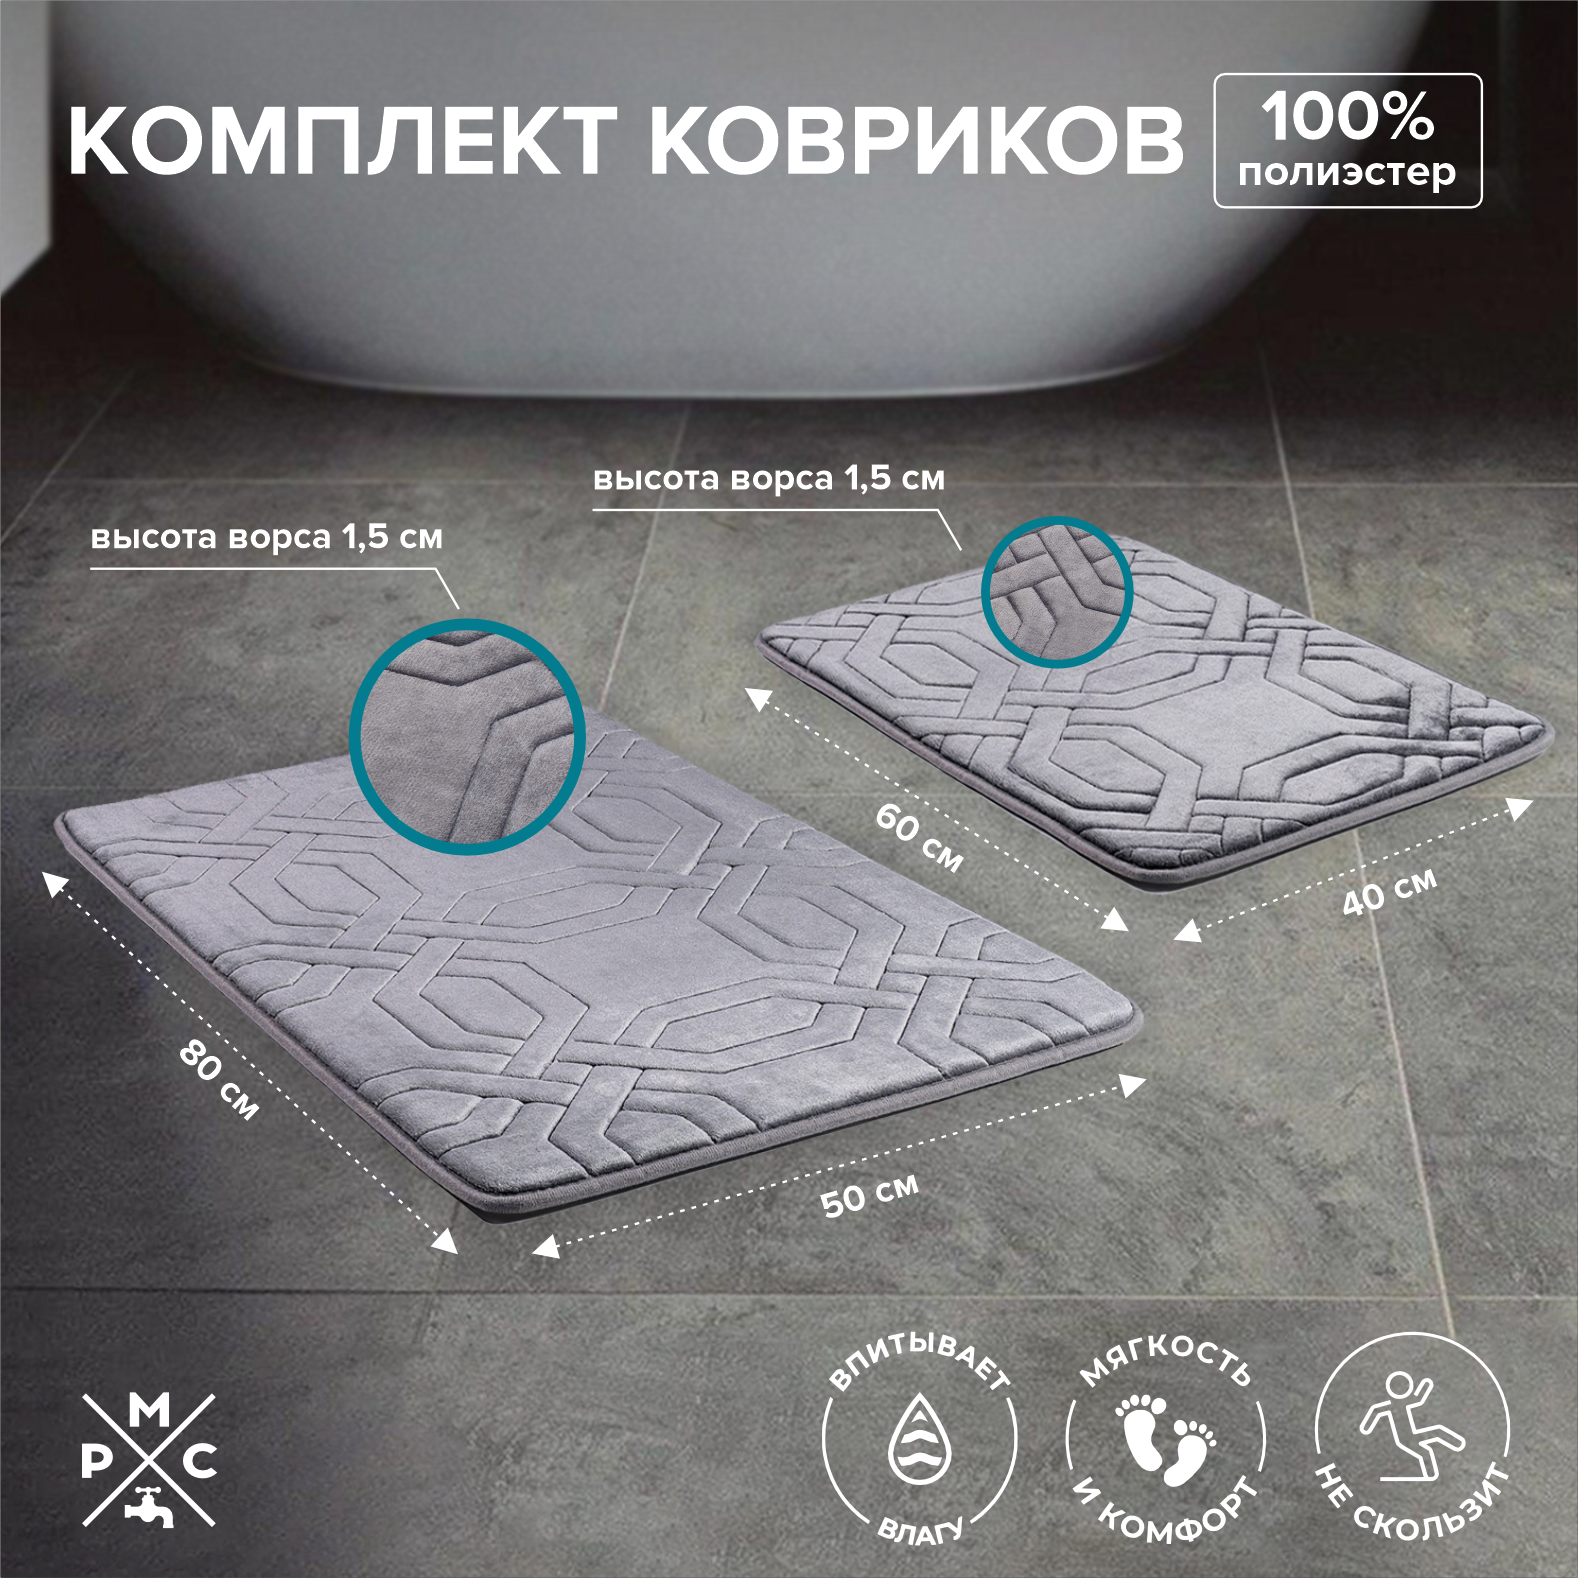 Набор ковриков для ванной и туалета, РМС-КК-09, коврик для ванной, 2 шт, противоскользящий, влагостойкий